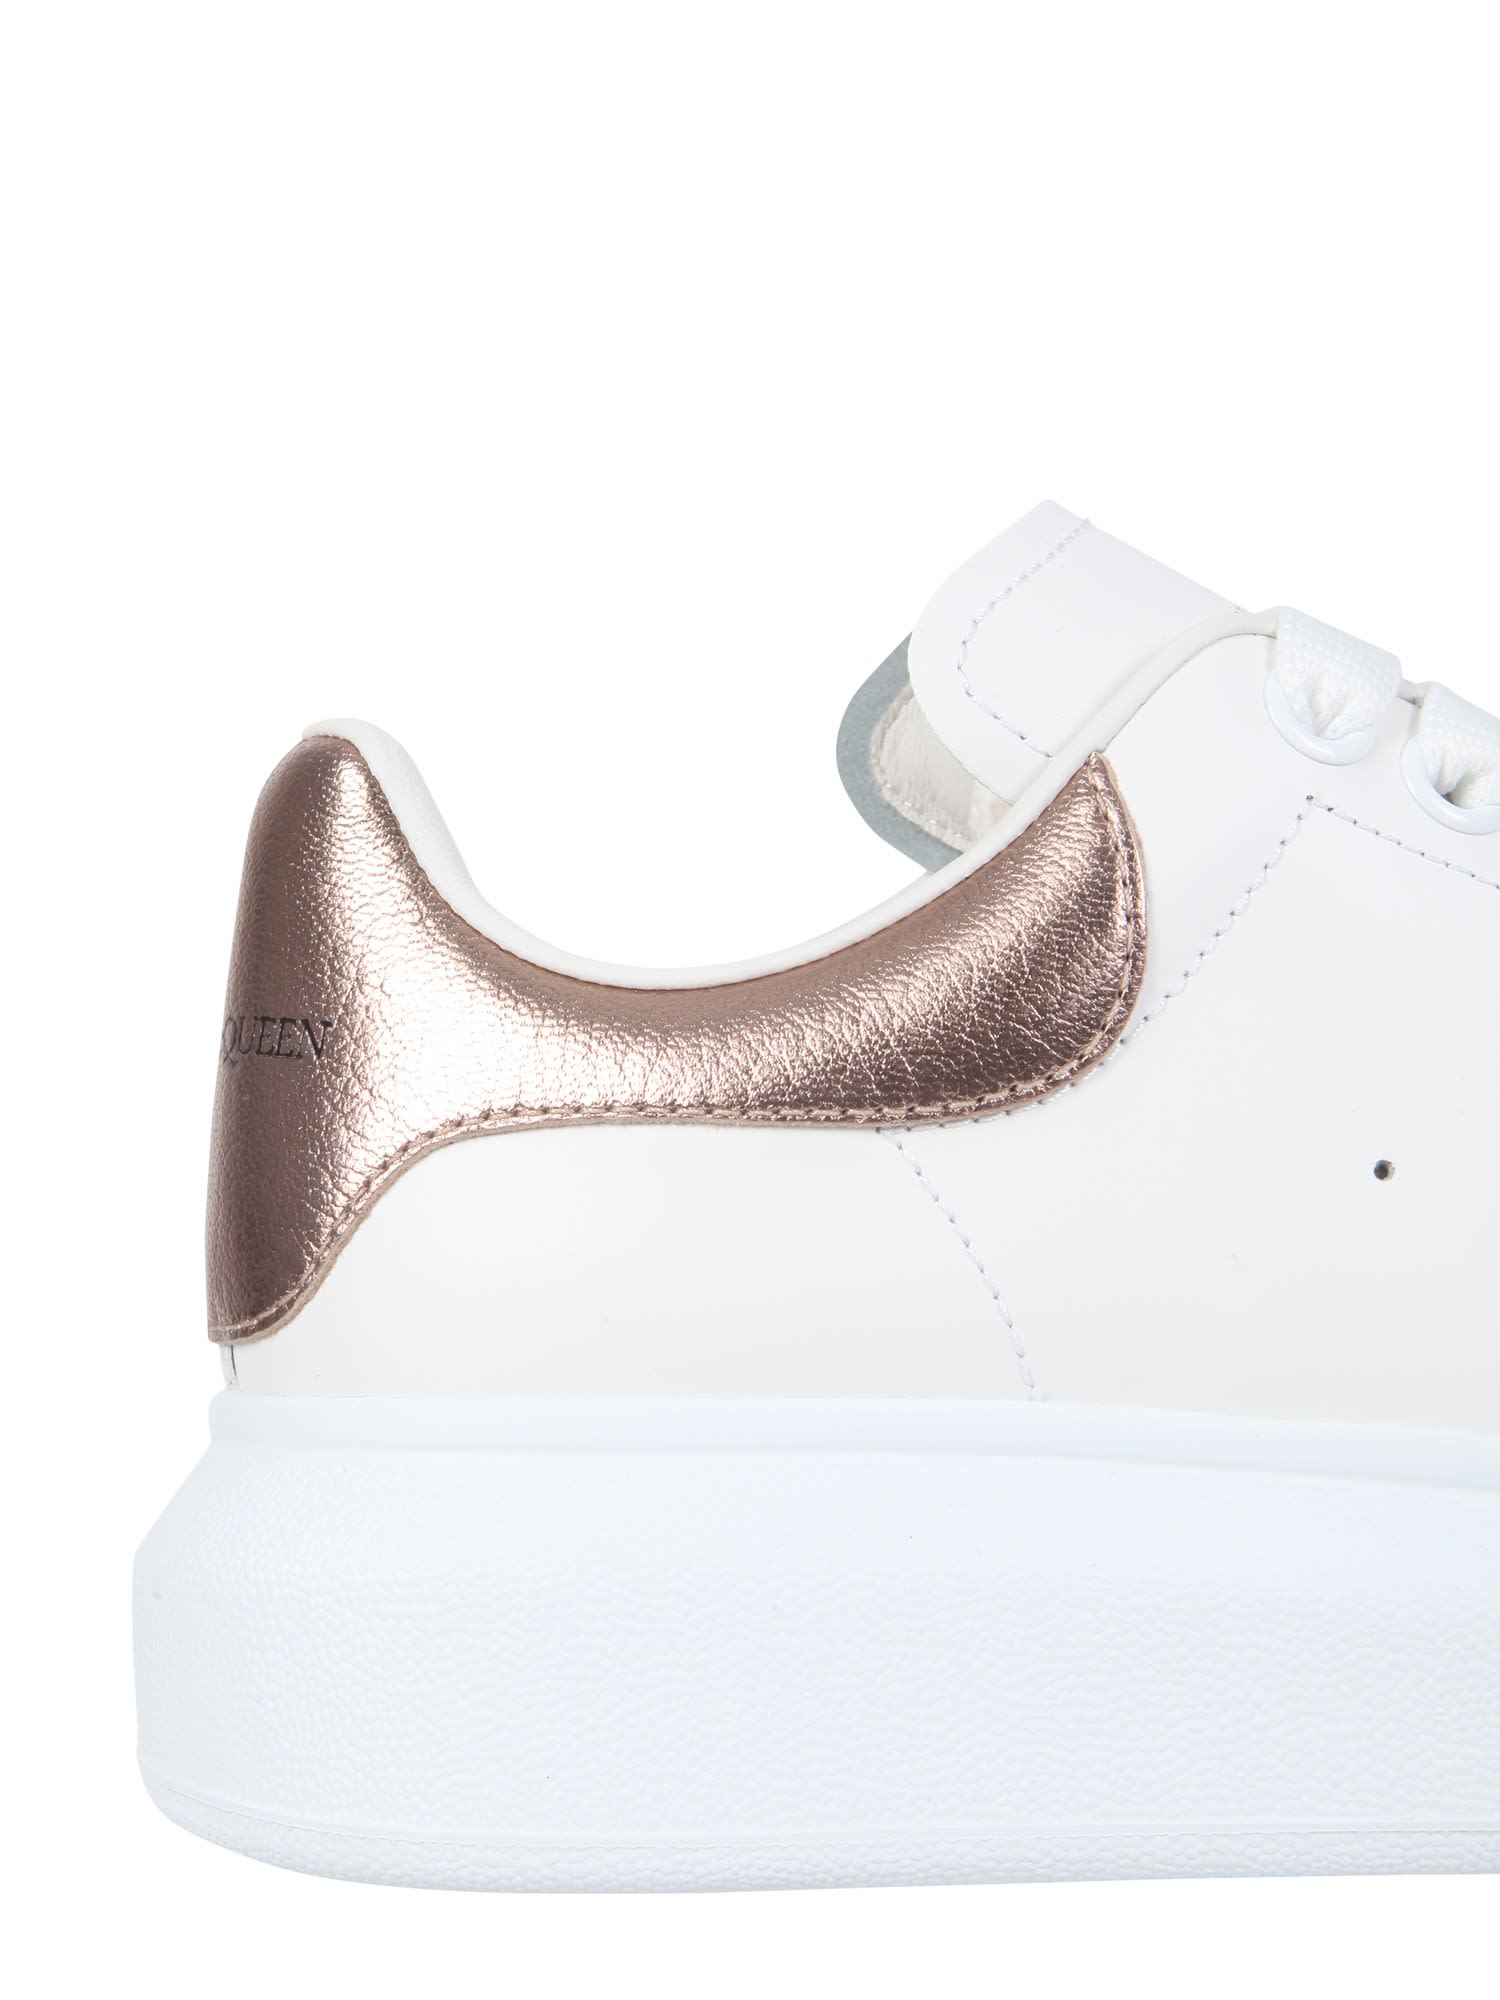 Shop Alexander Mcqueen Oversize Sneakers In White/pink